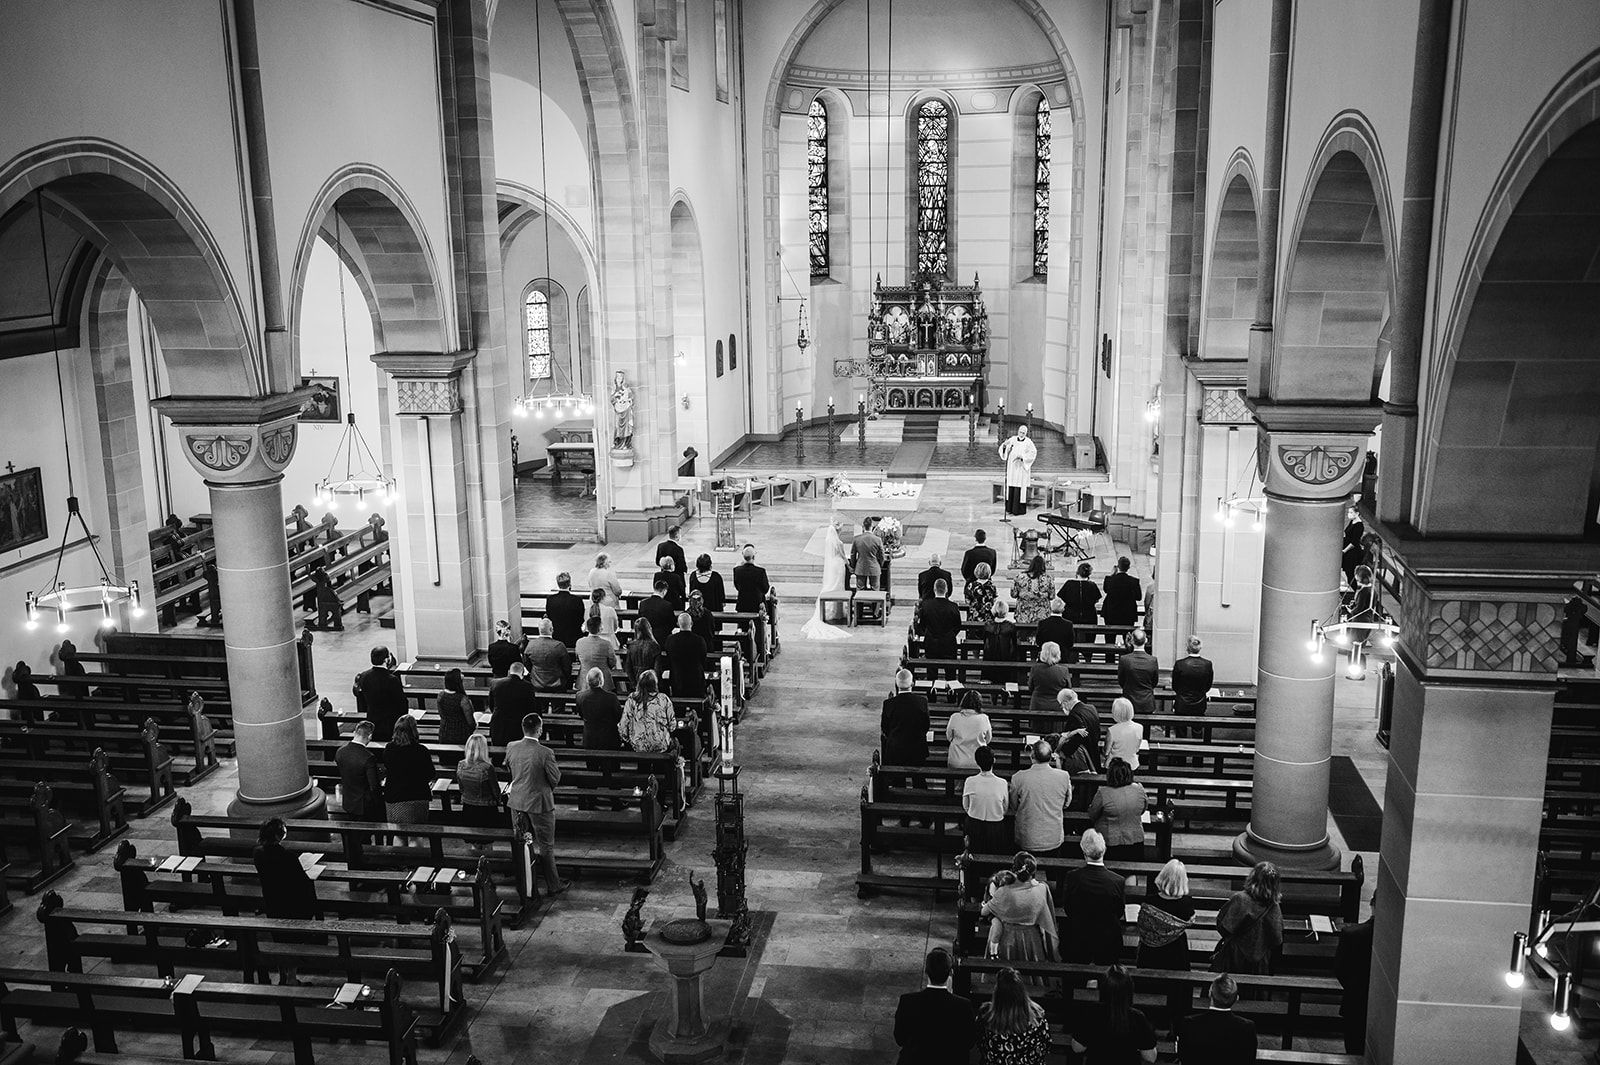 Hochzeitsfotograf Dortmund